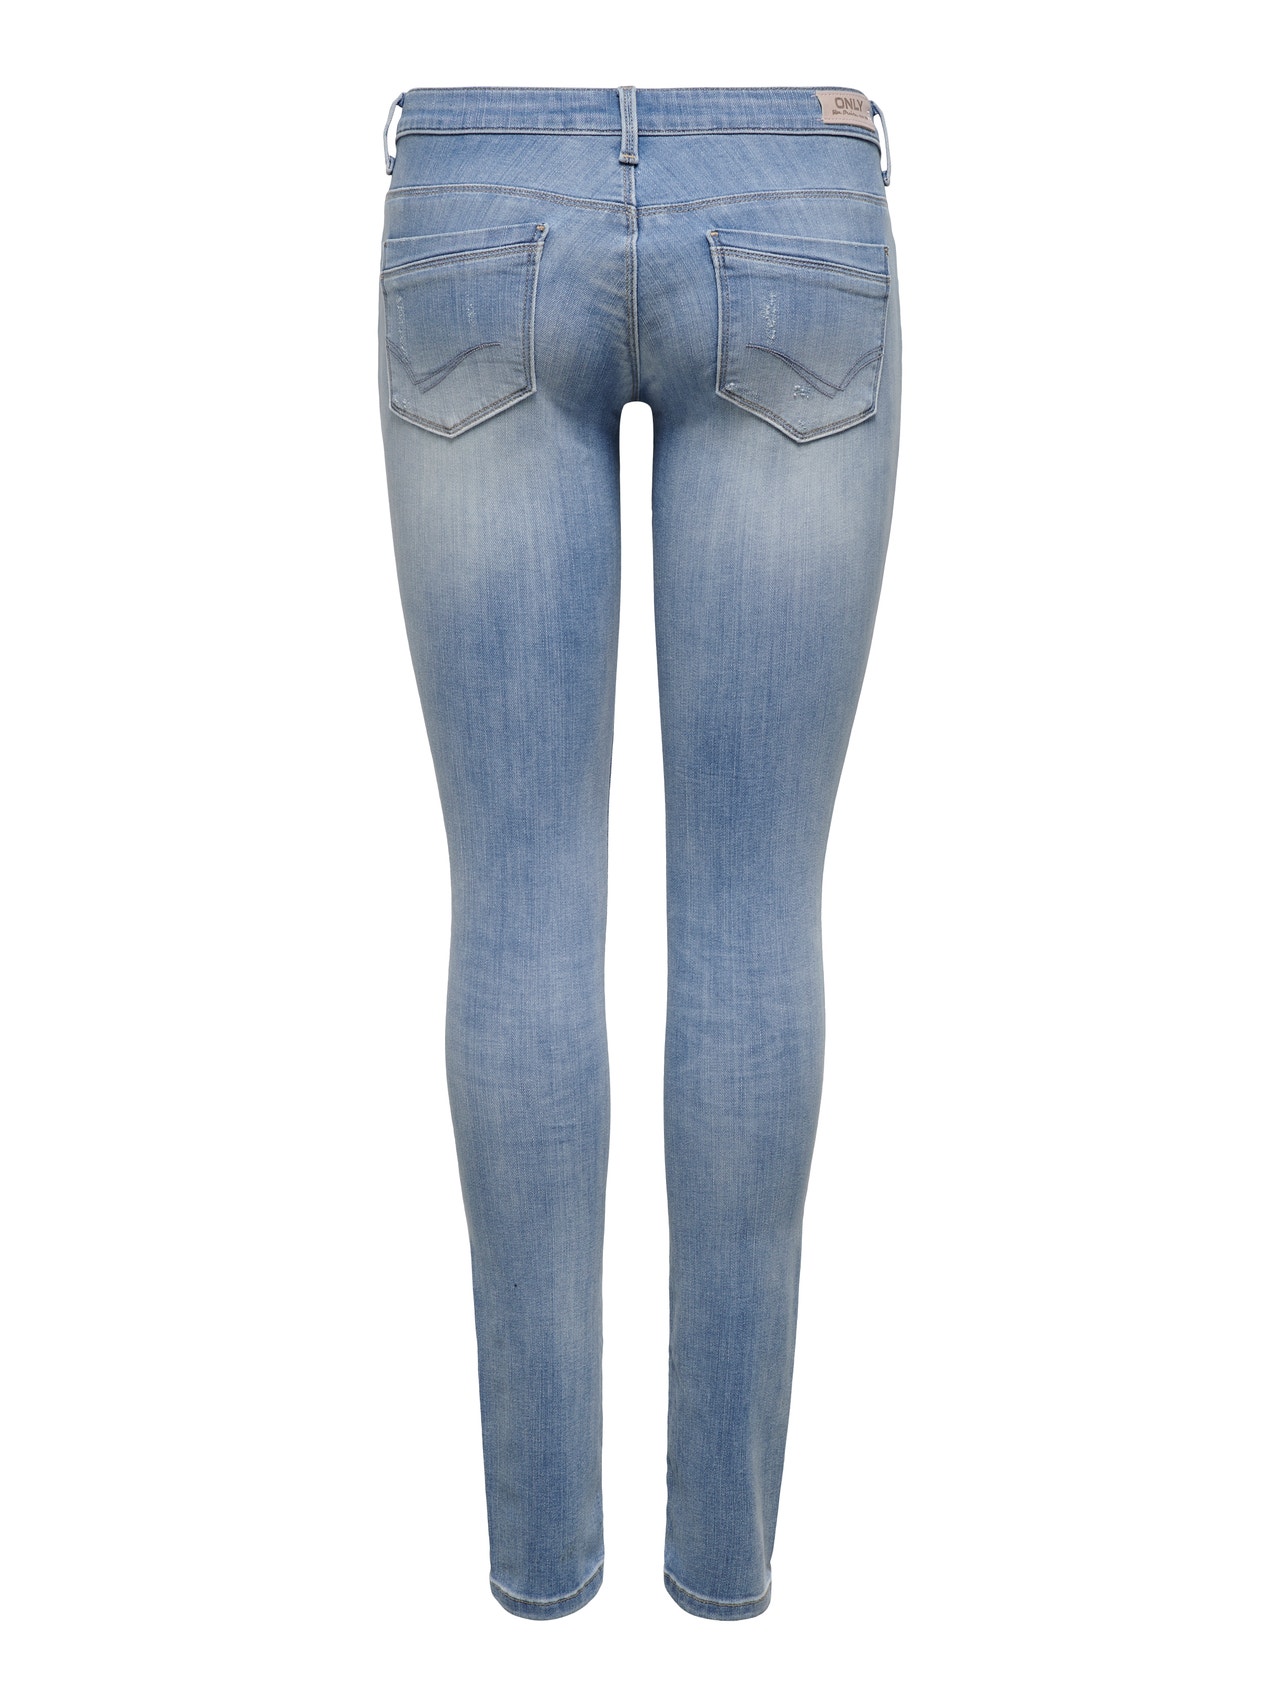 ONLY Jeans Skinny Fit -Light Blue Denim - 15177949